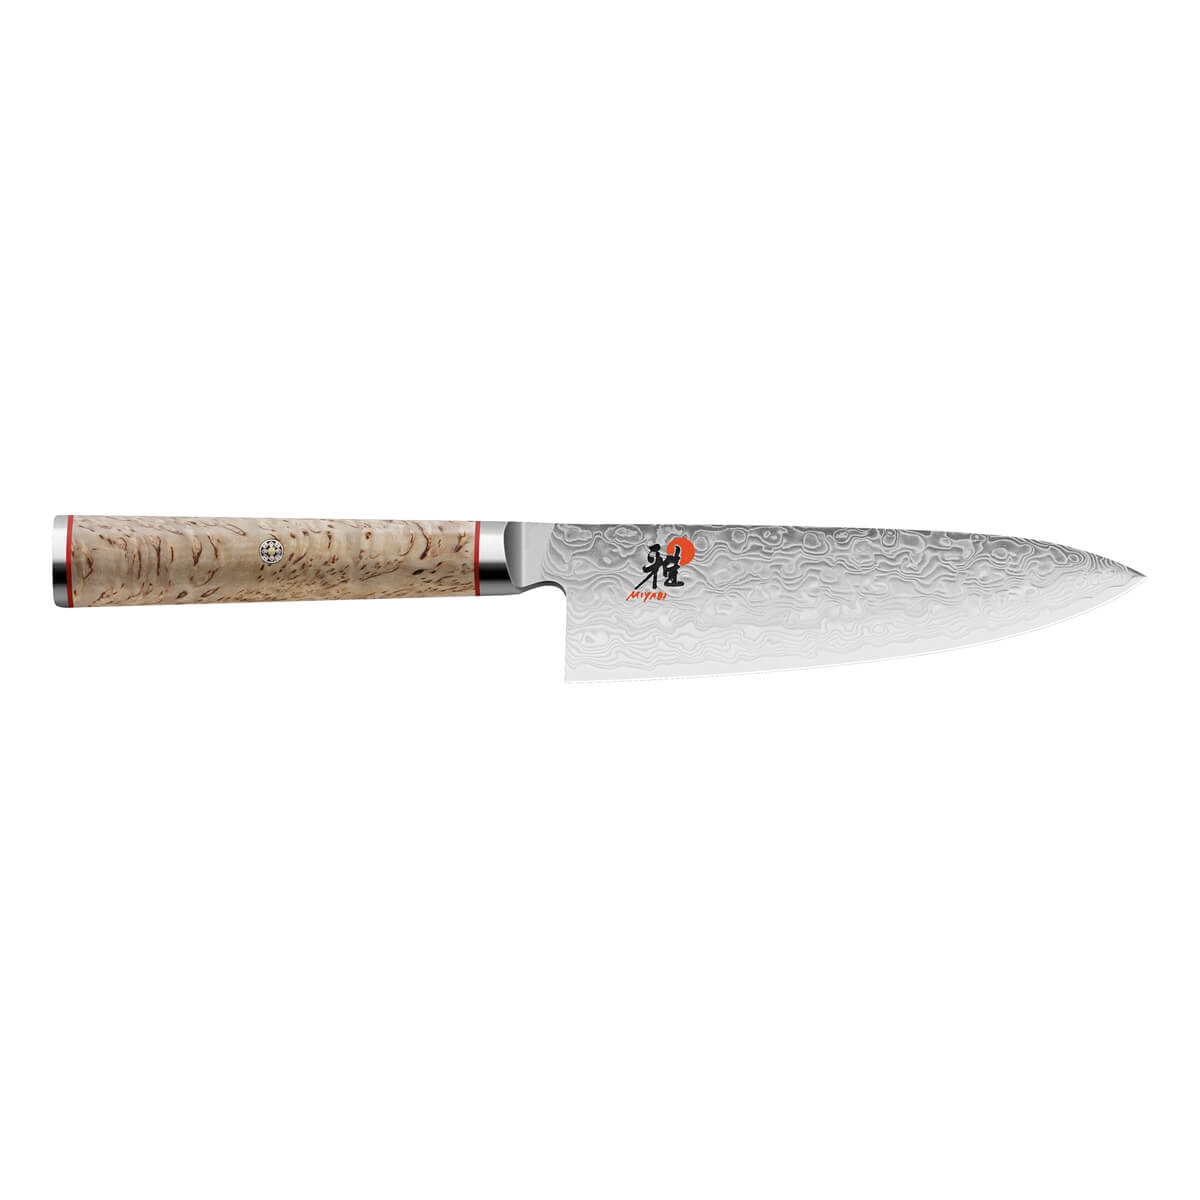 #1 på vores liste over kokkeknive er Kokkekniv